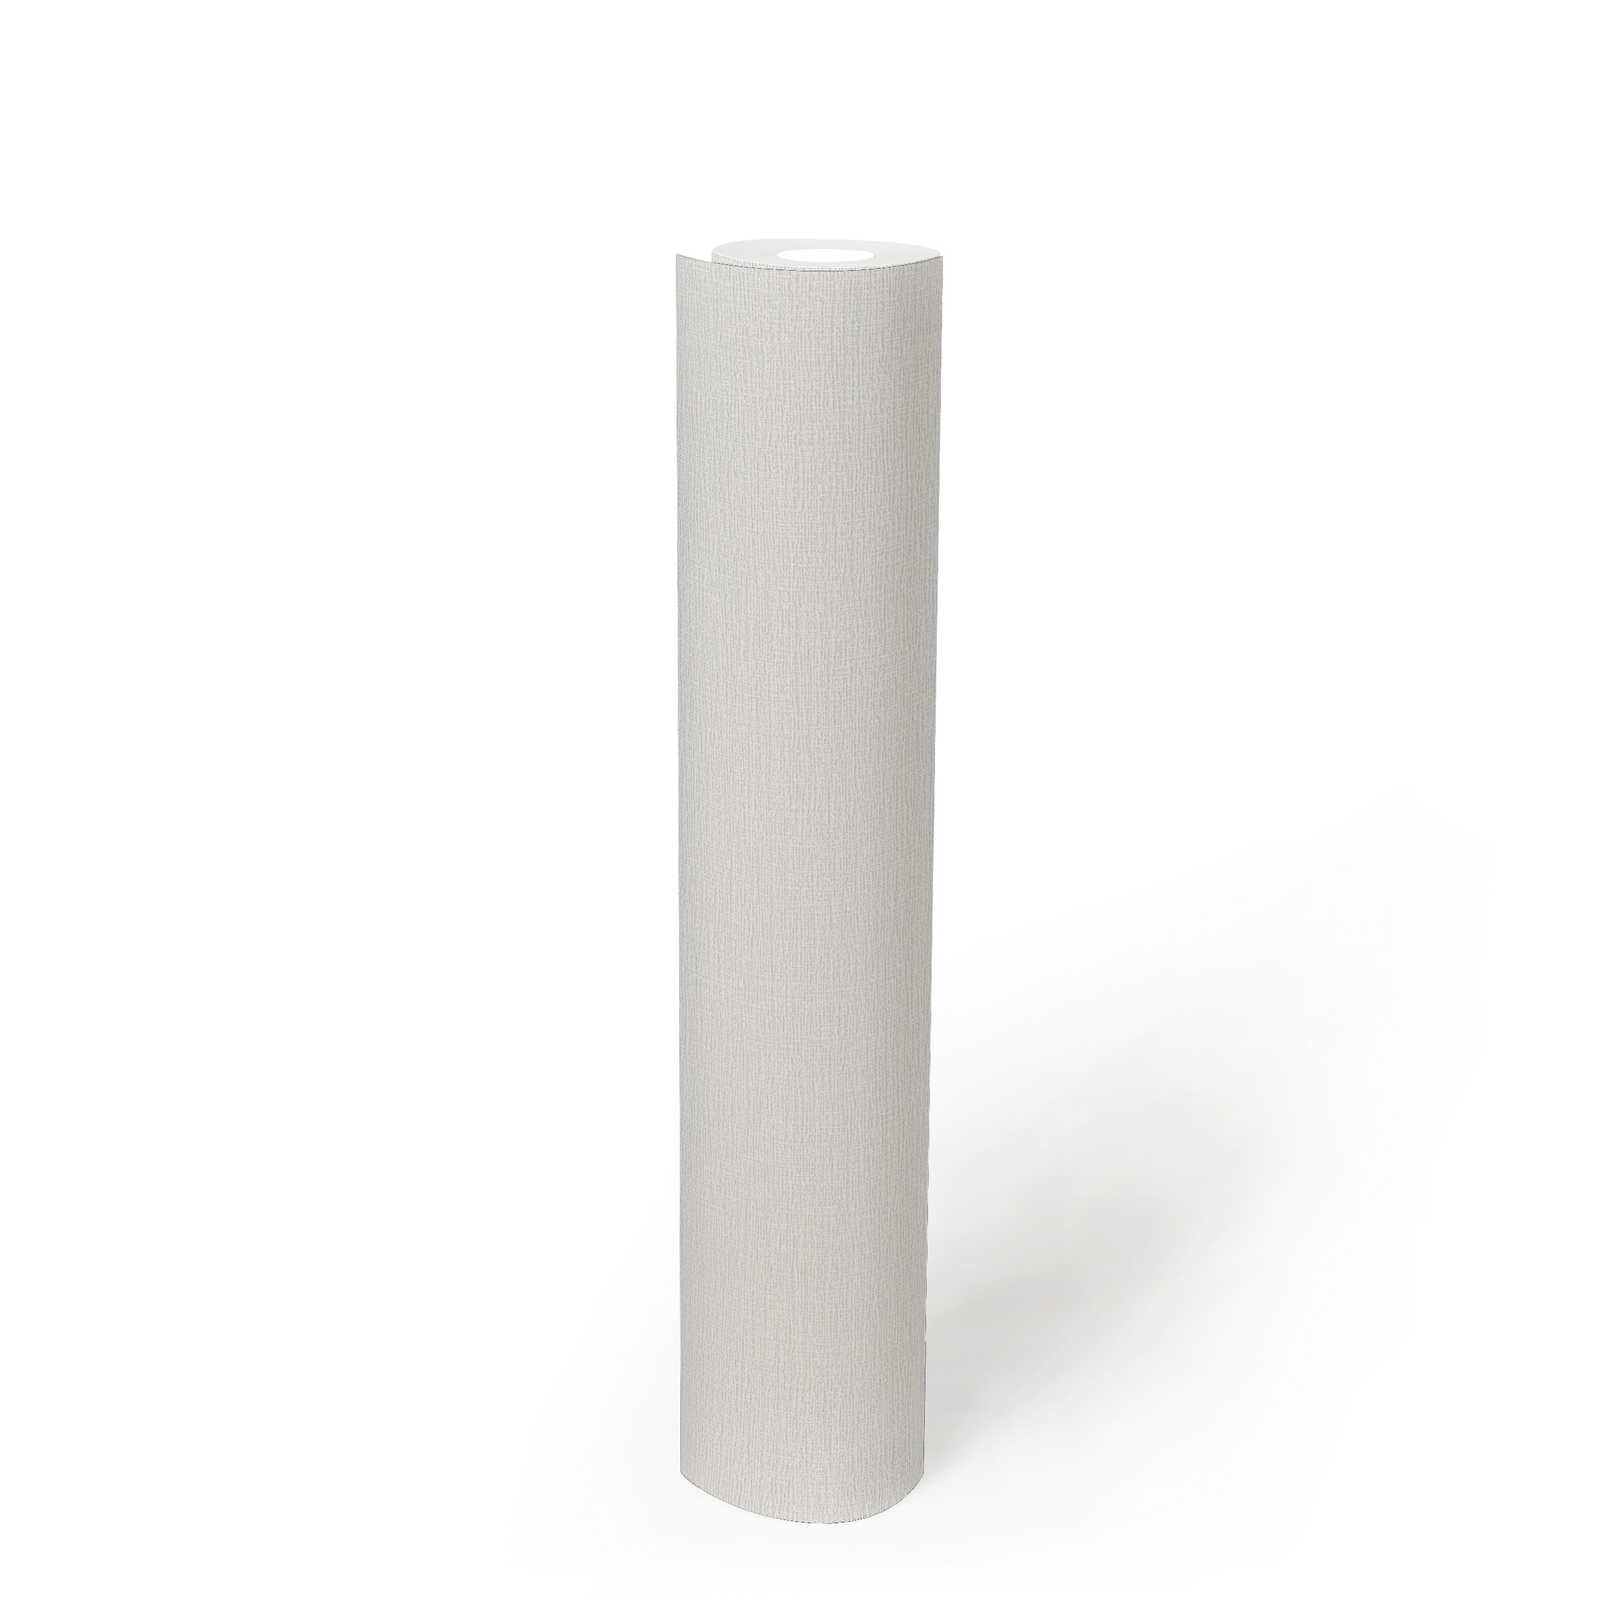             Papier peint blanc naturel mat avec motifs structurés discrets
        